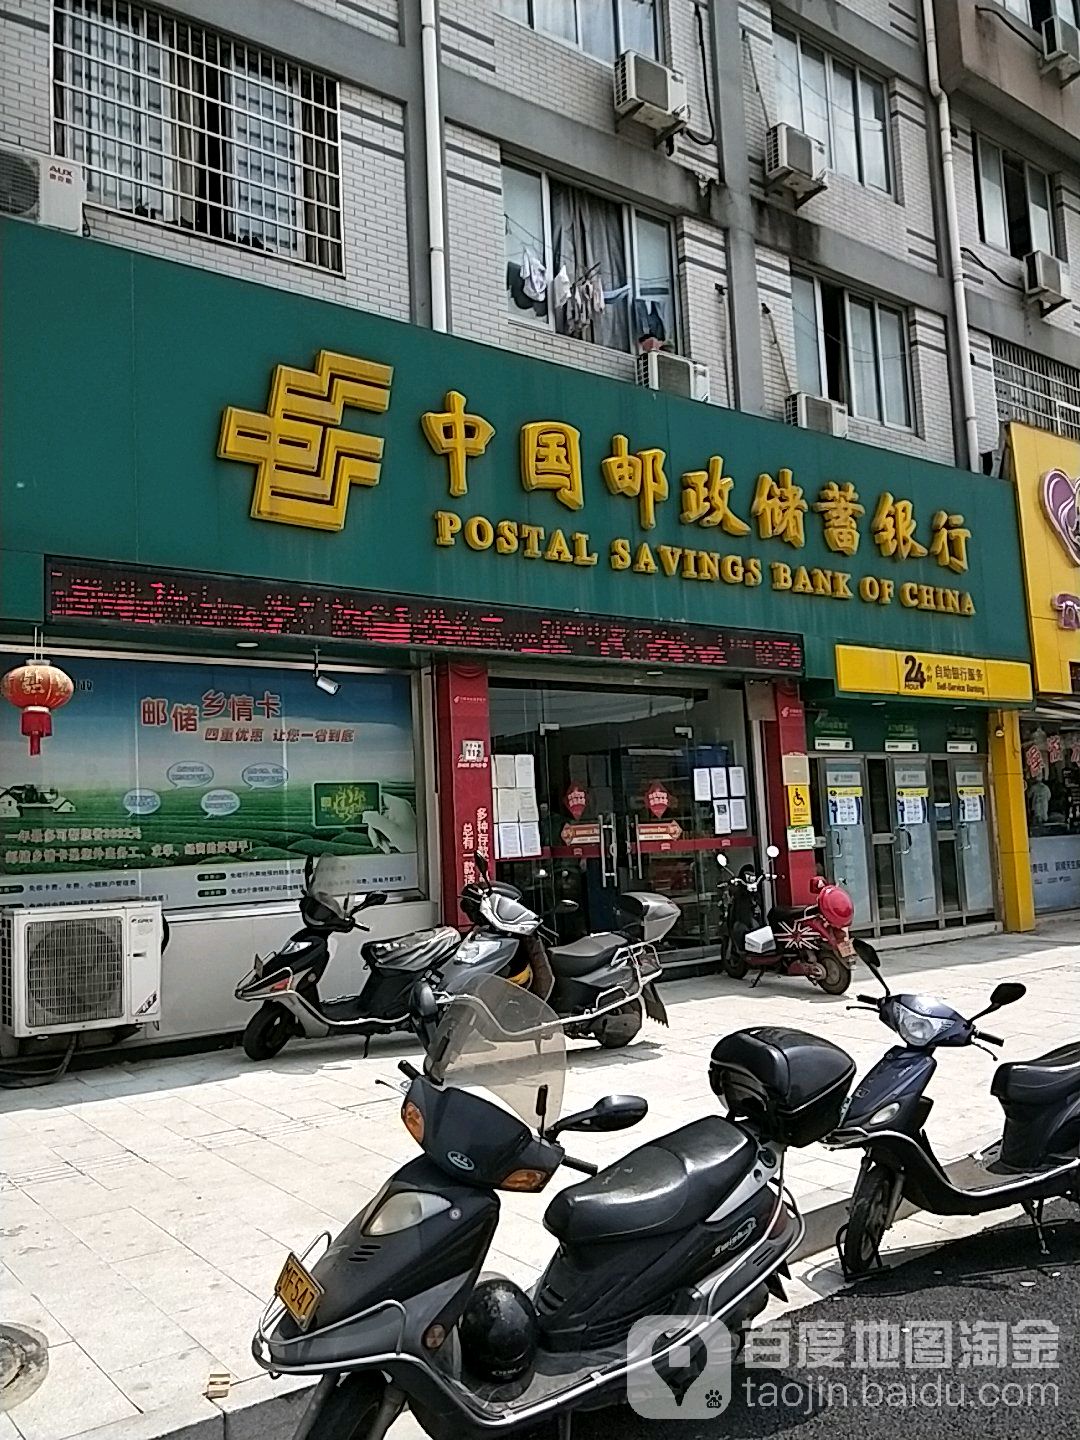 中國郵政儲蓄銀行24小時自助銀行(金橋儲蓄所)